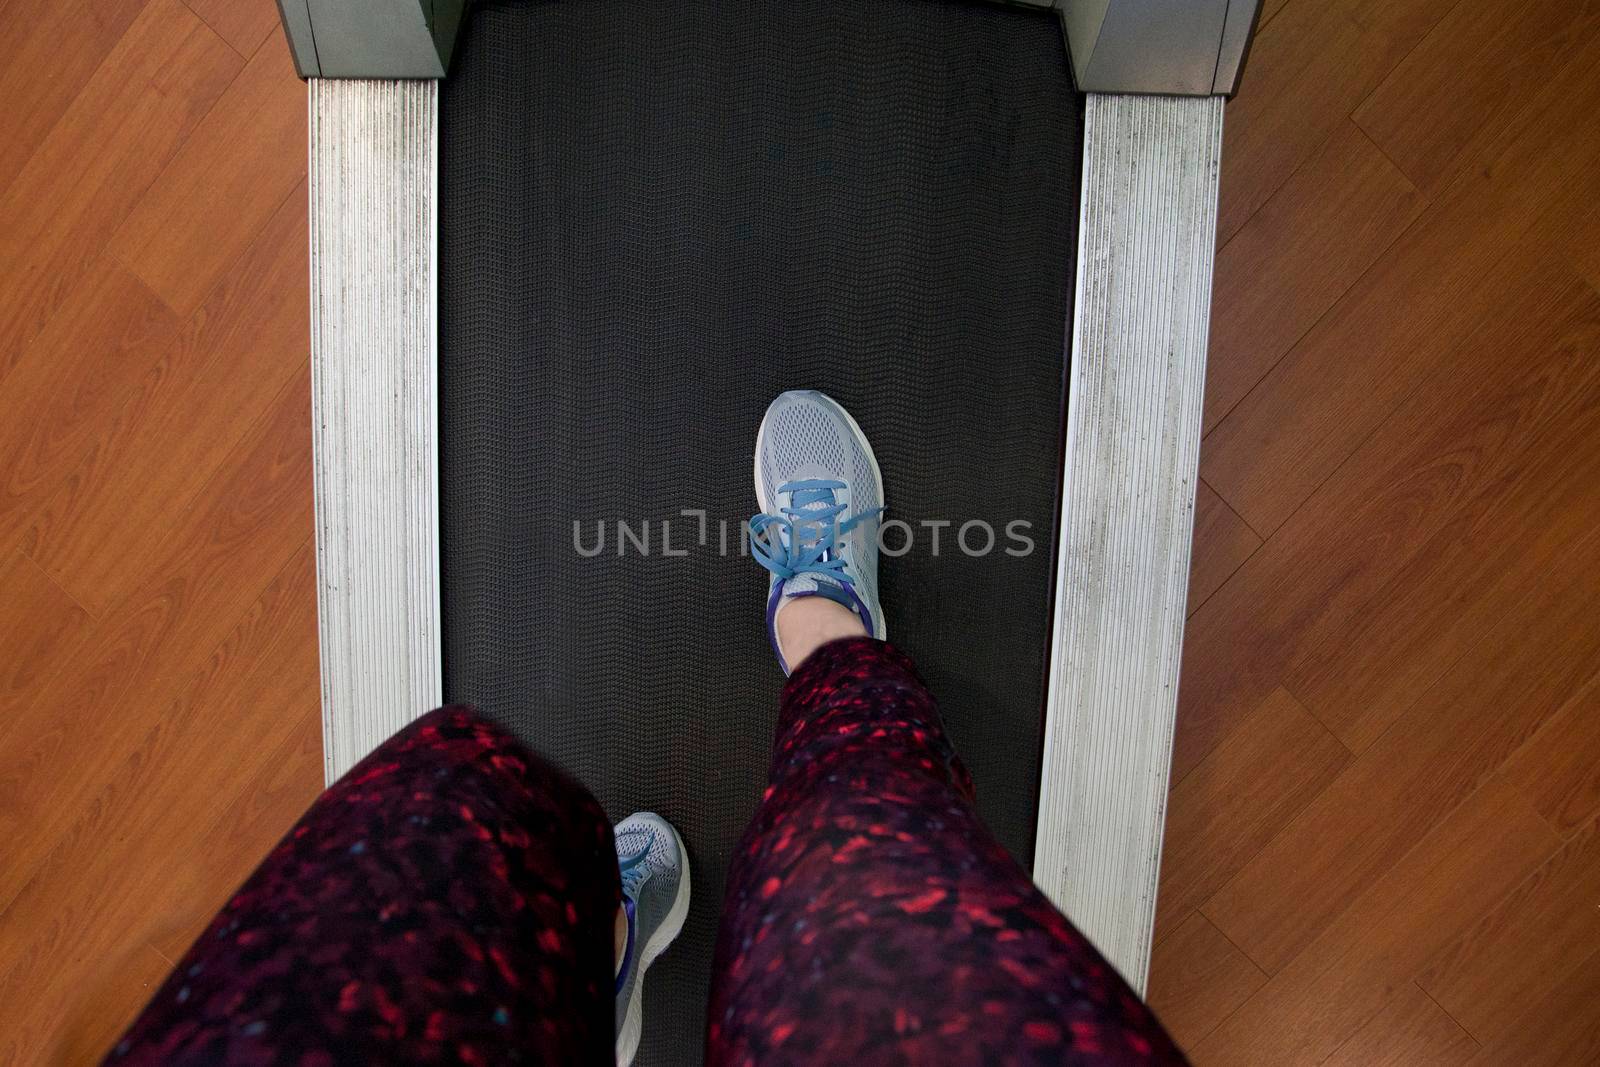 Knee bent running on treadmill by rustycanuck